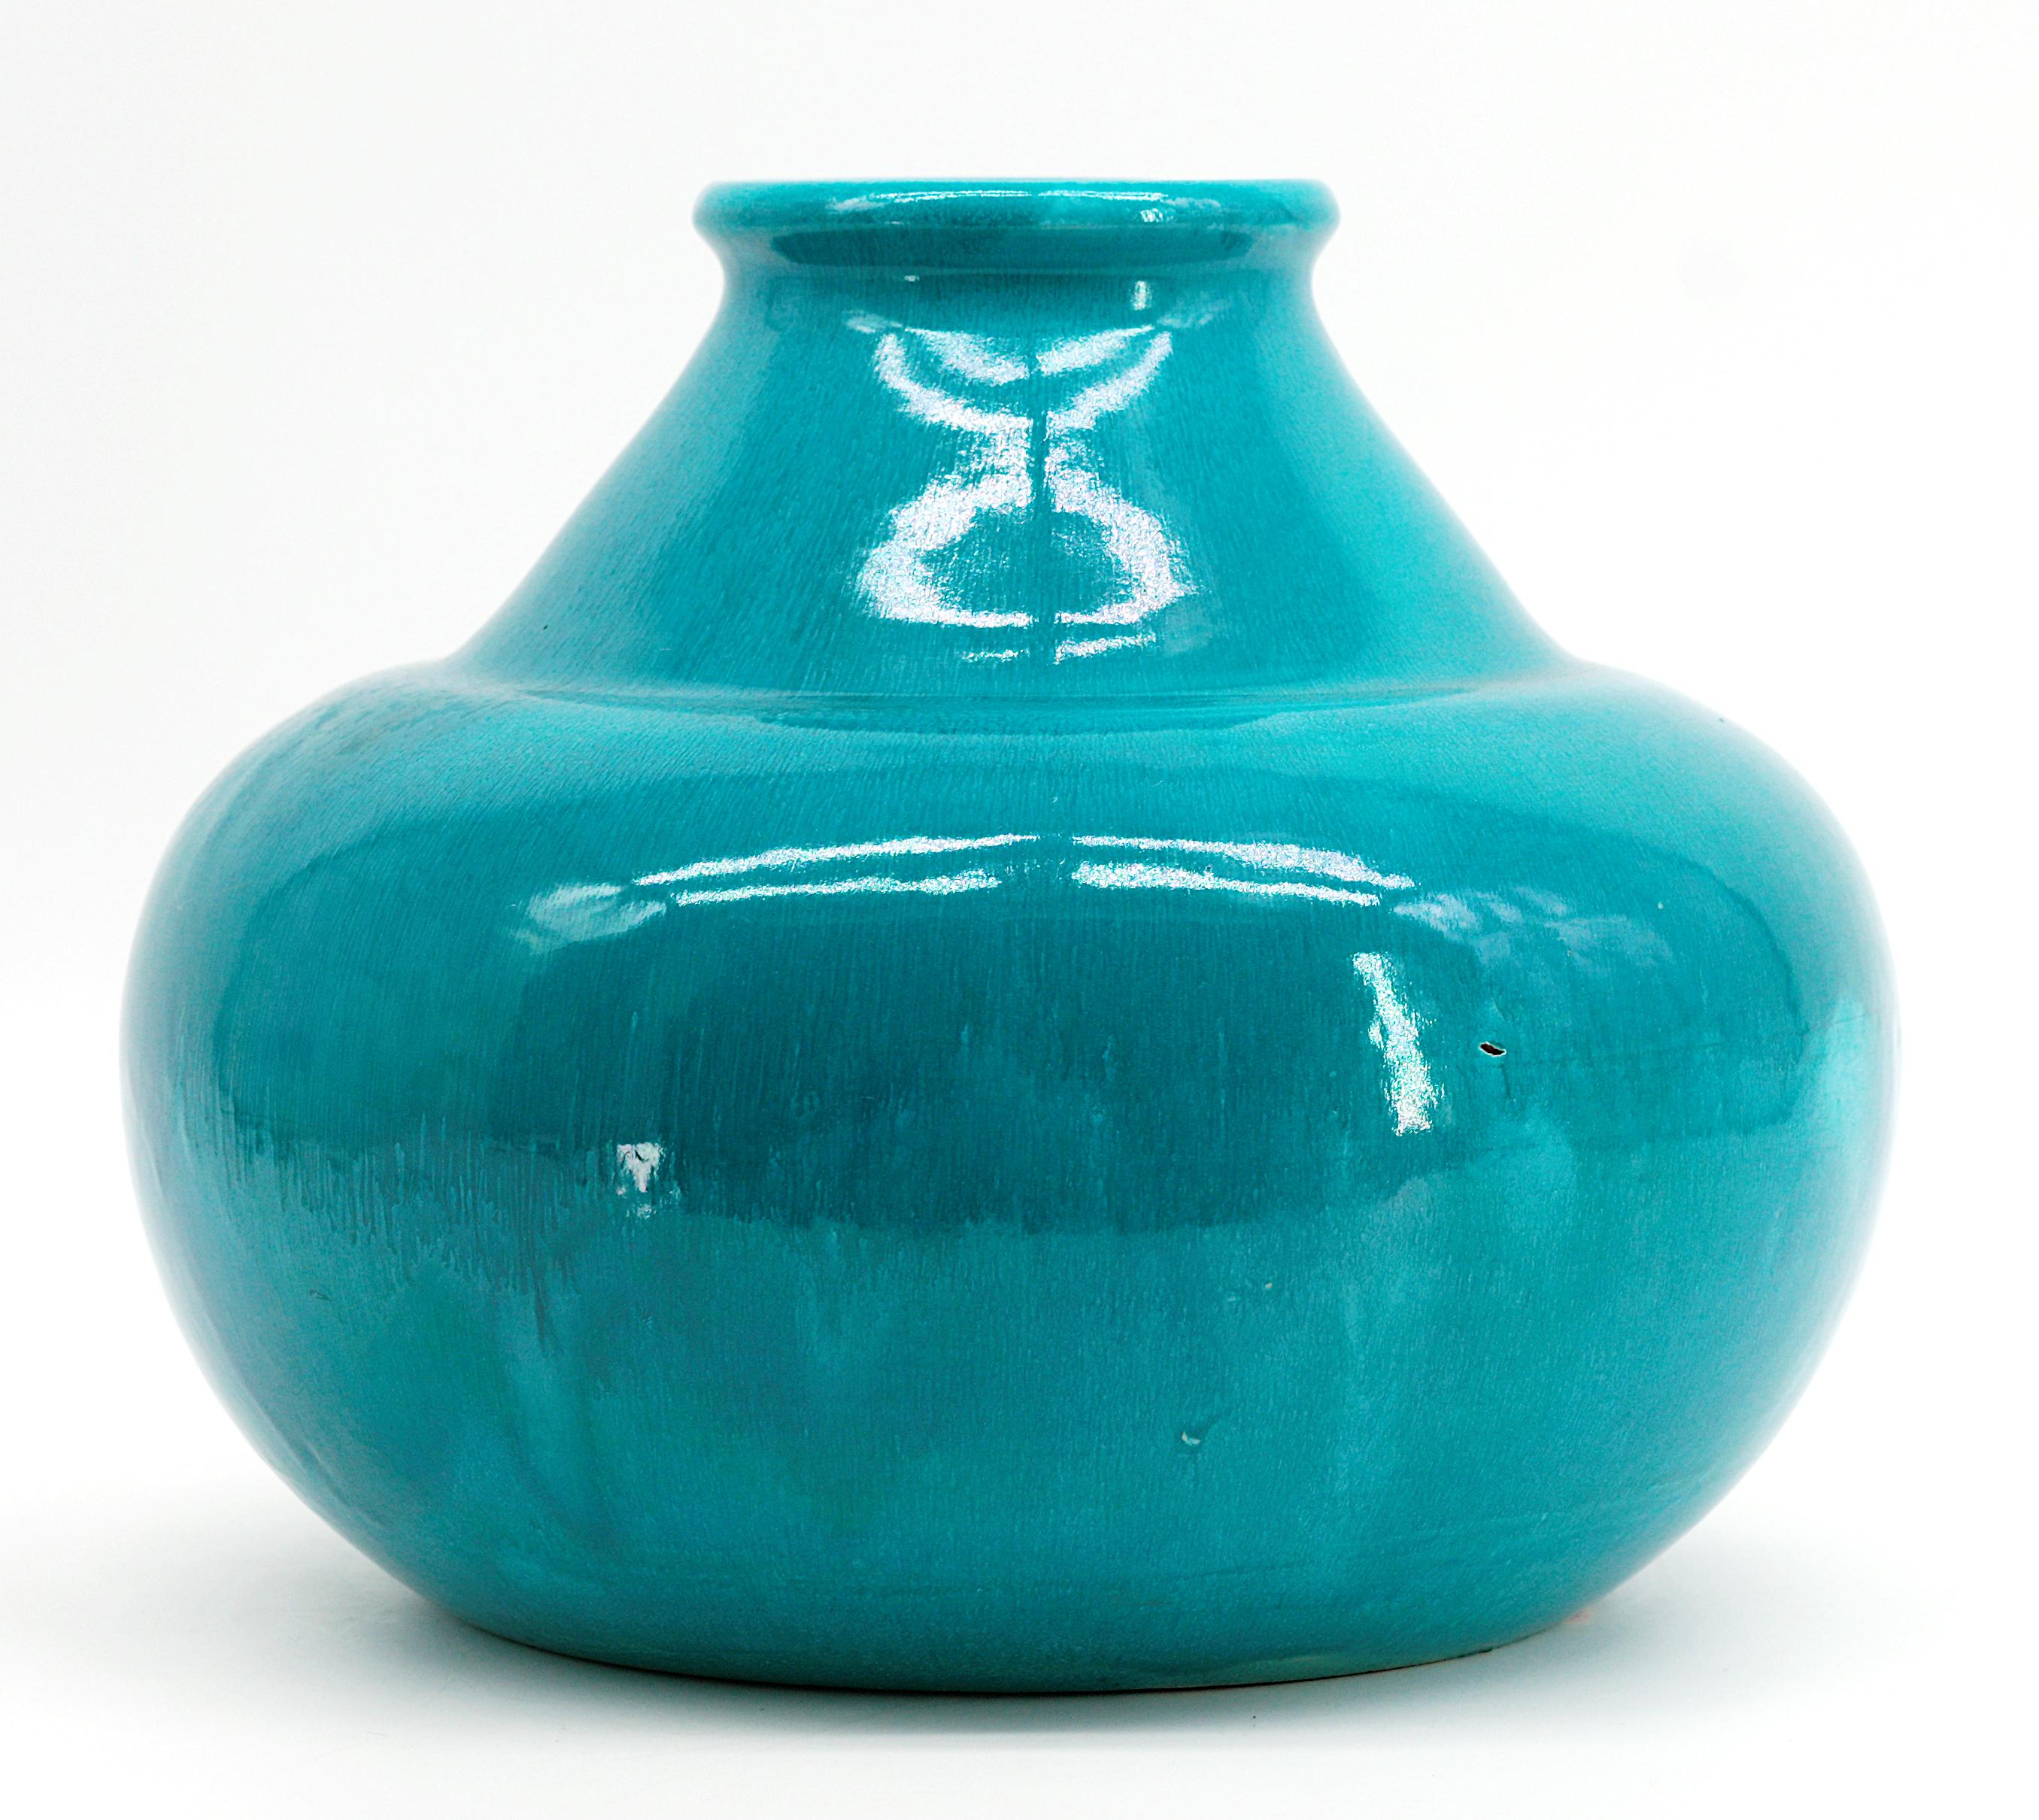 Vase en céramique Art déco de Céramique d'Art de Bordeaux - CAB, France, années 1930. Grès. Couverture turquoise. Hauteur : 7.9